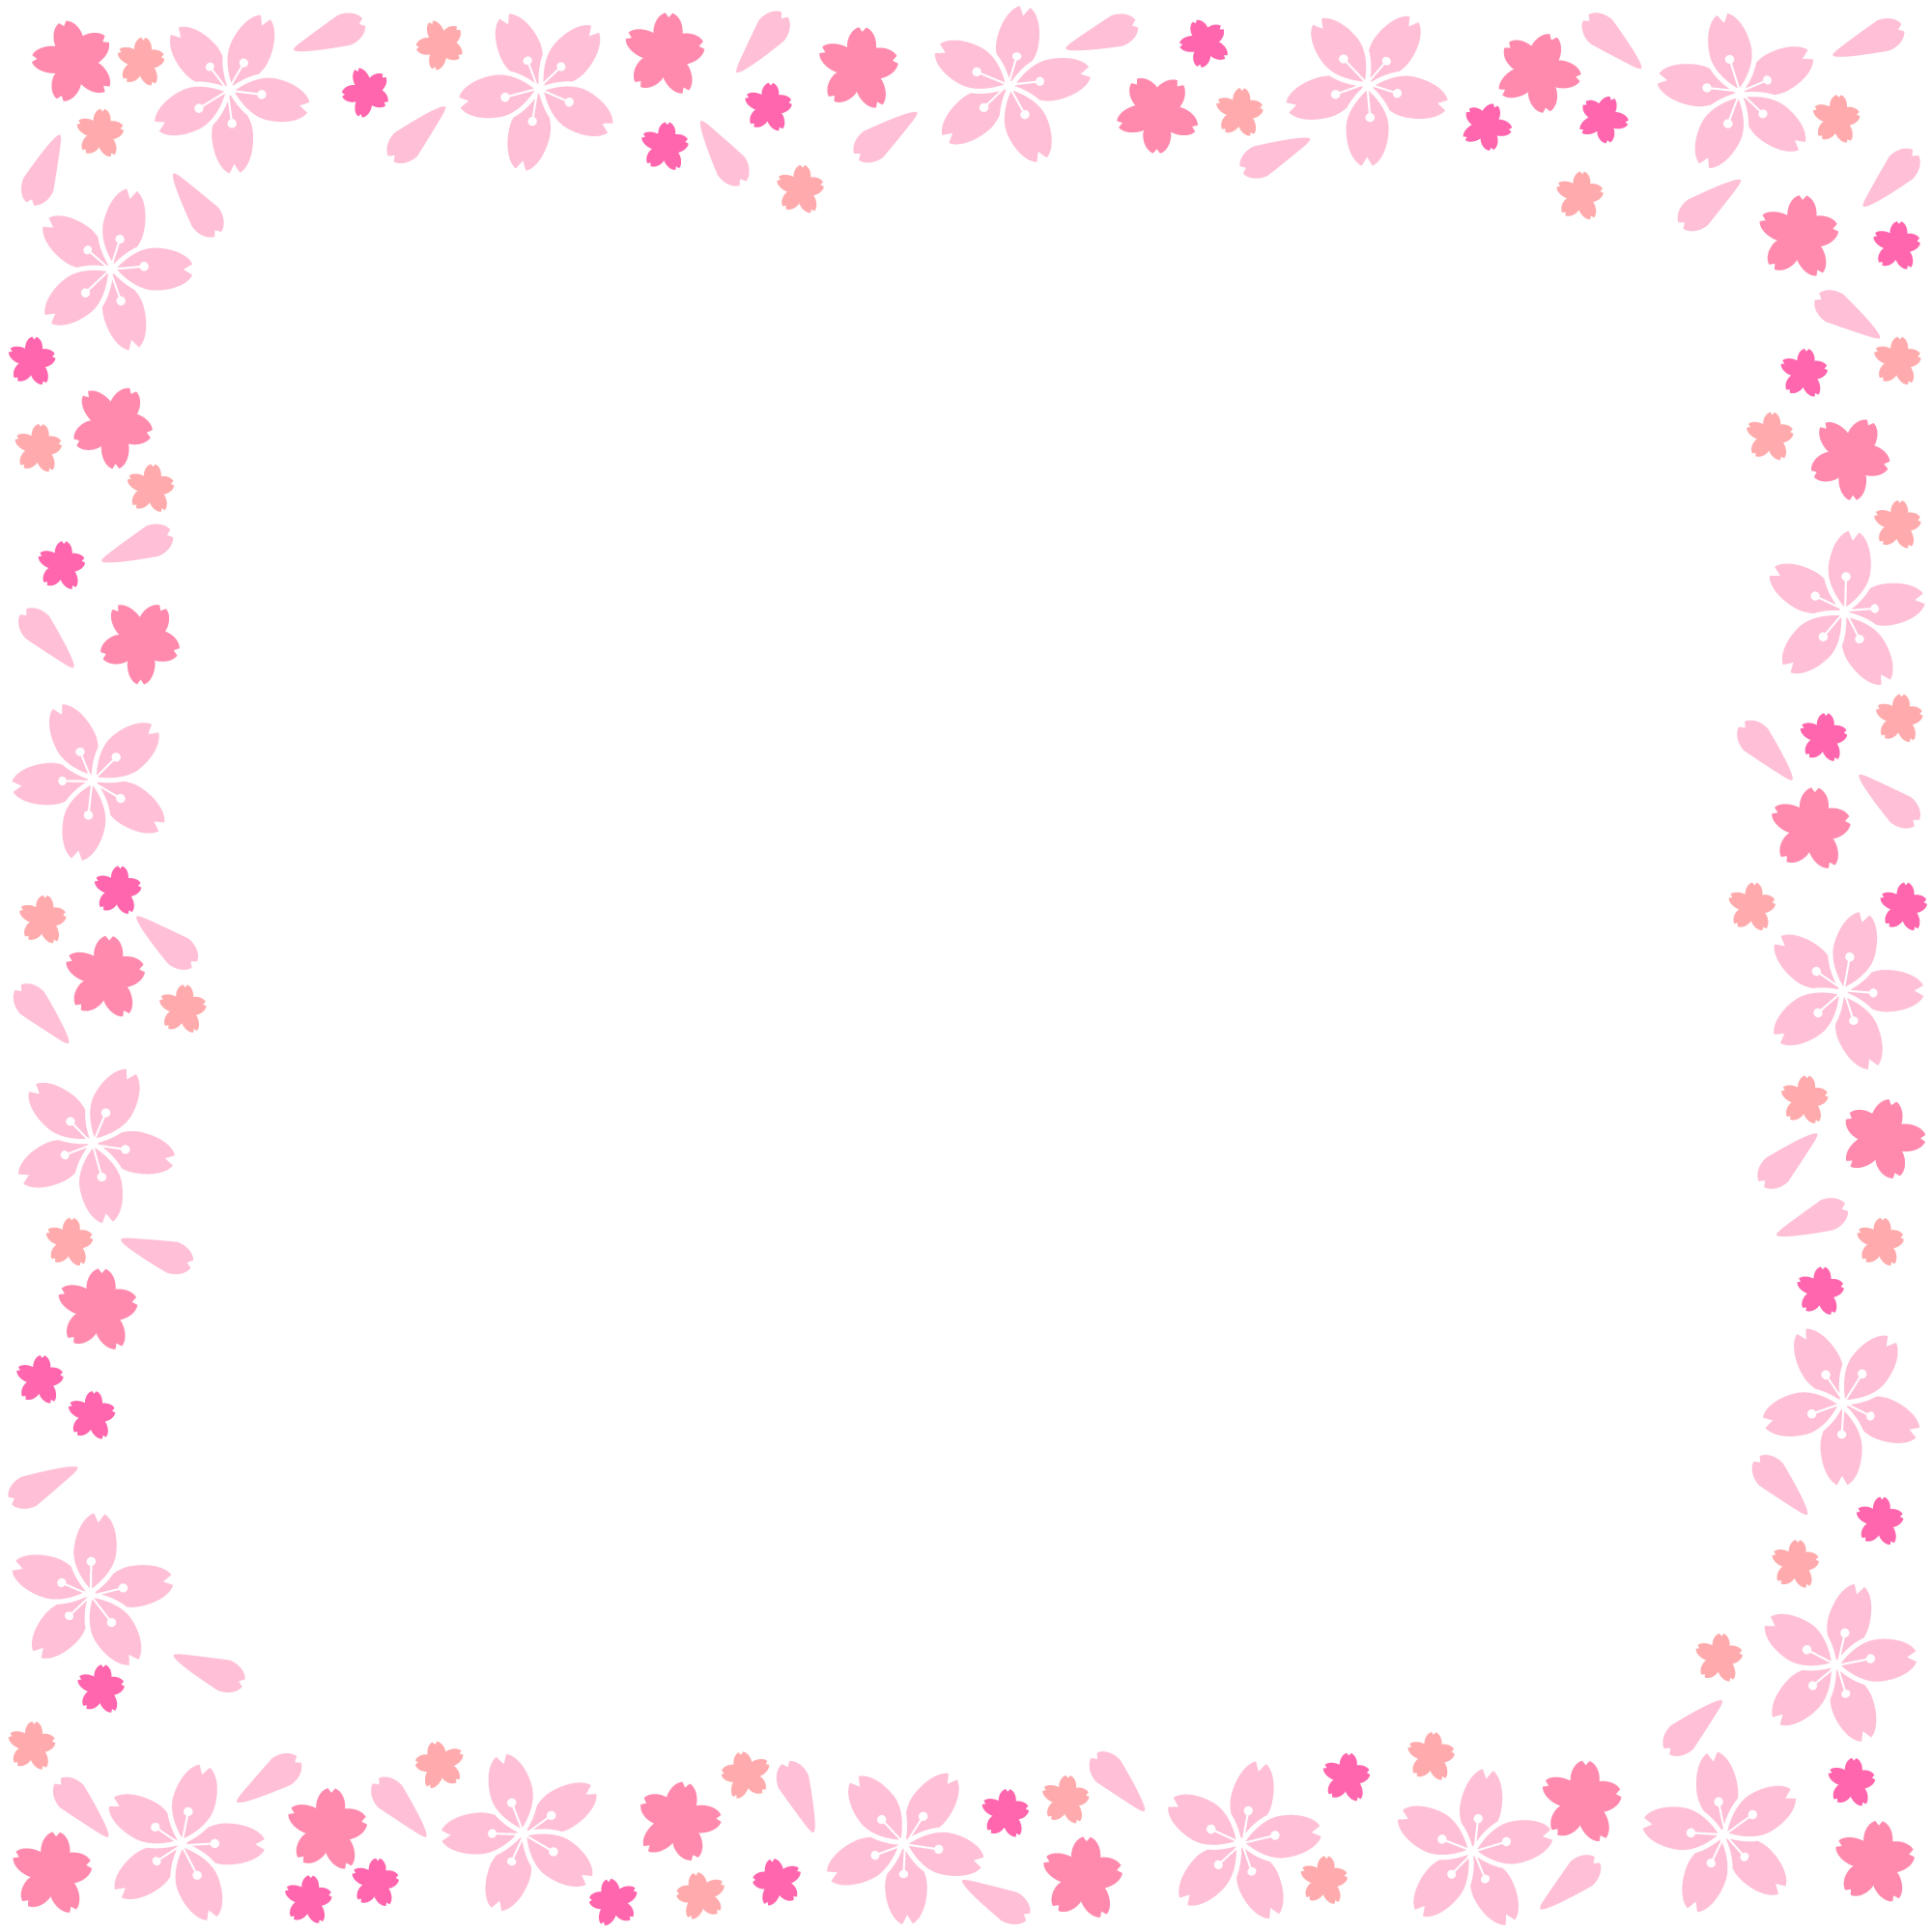 桜の花びらが散る正方形のフレーム Ziu Illustration